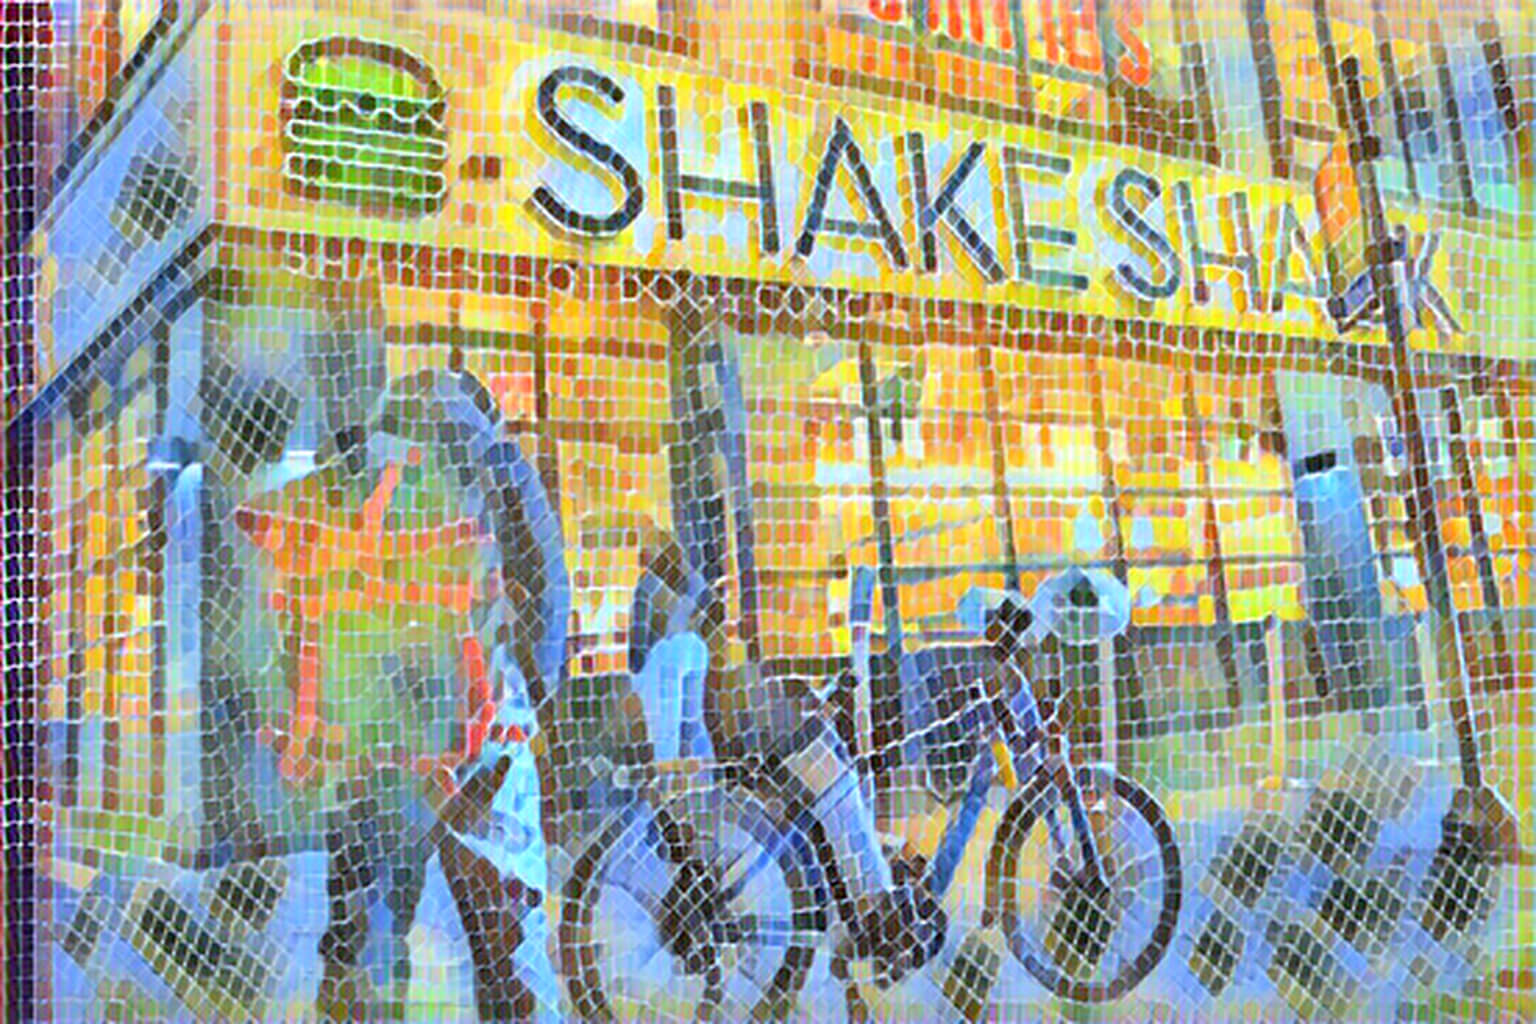   shake shack      